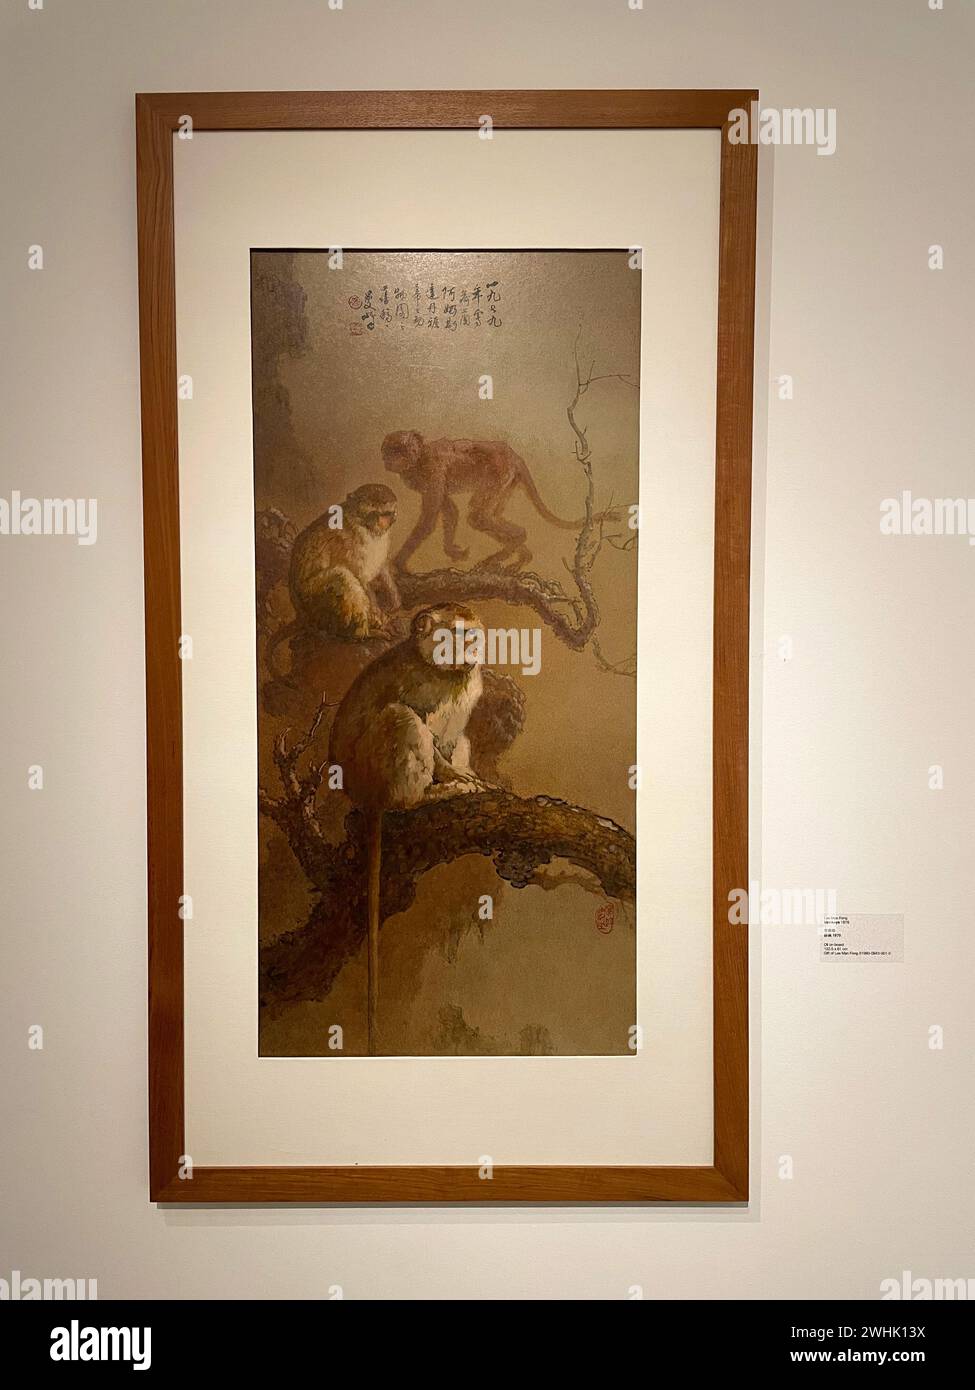 Singapour. La collection de l'Asie du Sud et du Sud-est au Musée nus de Singapour. Peintures asiatiques traditionnelles et modernes. Banque D'Images